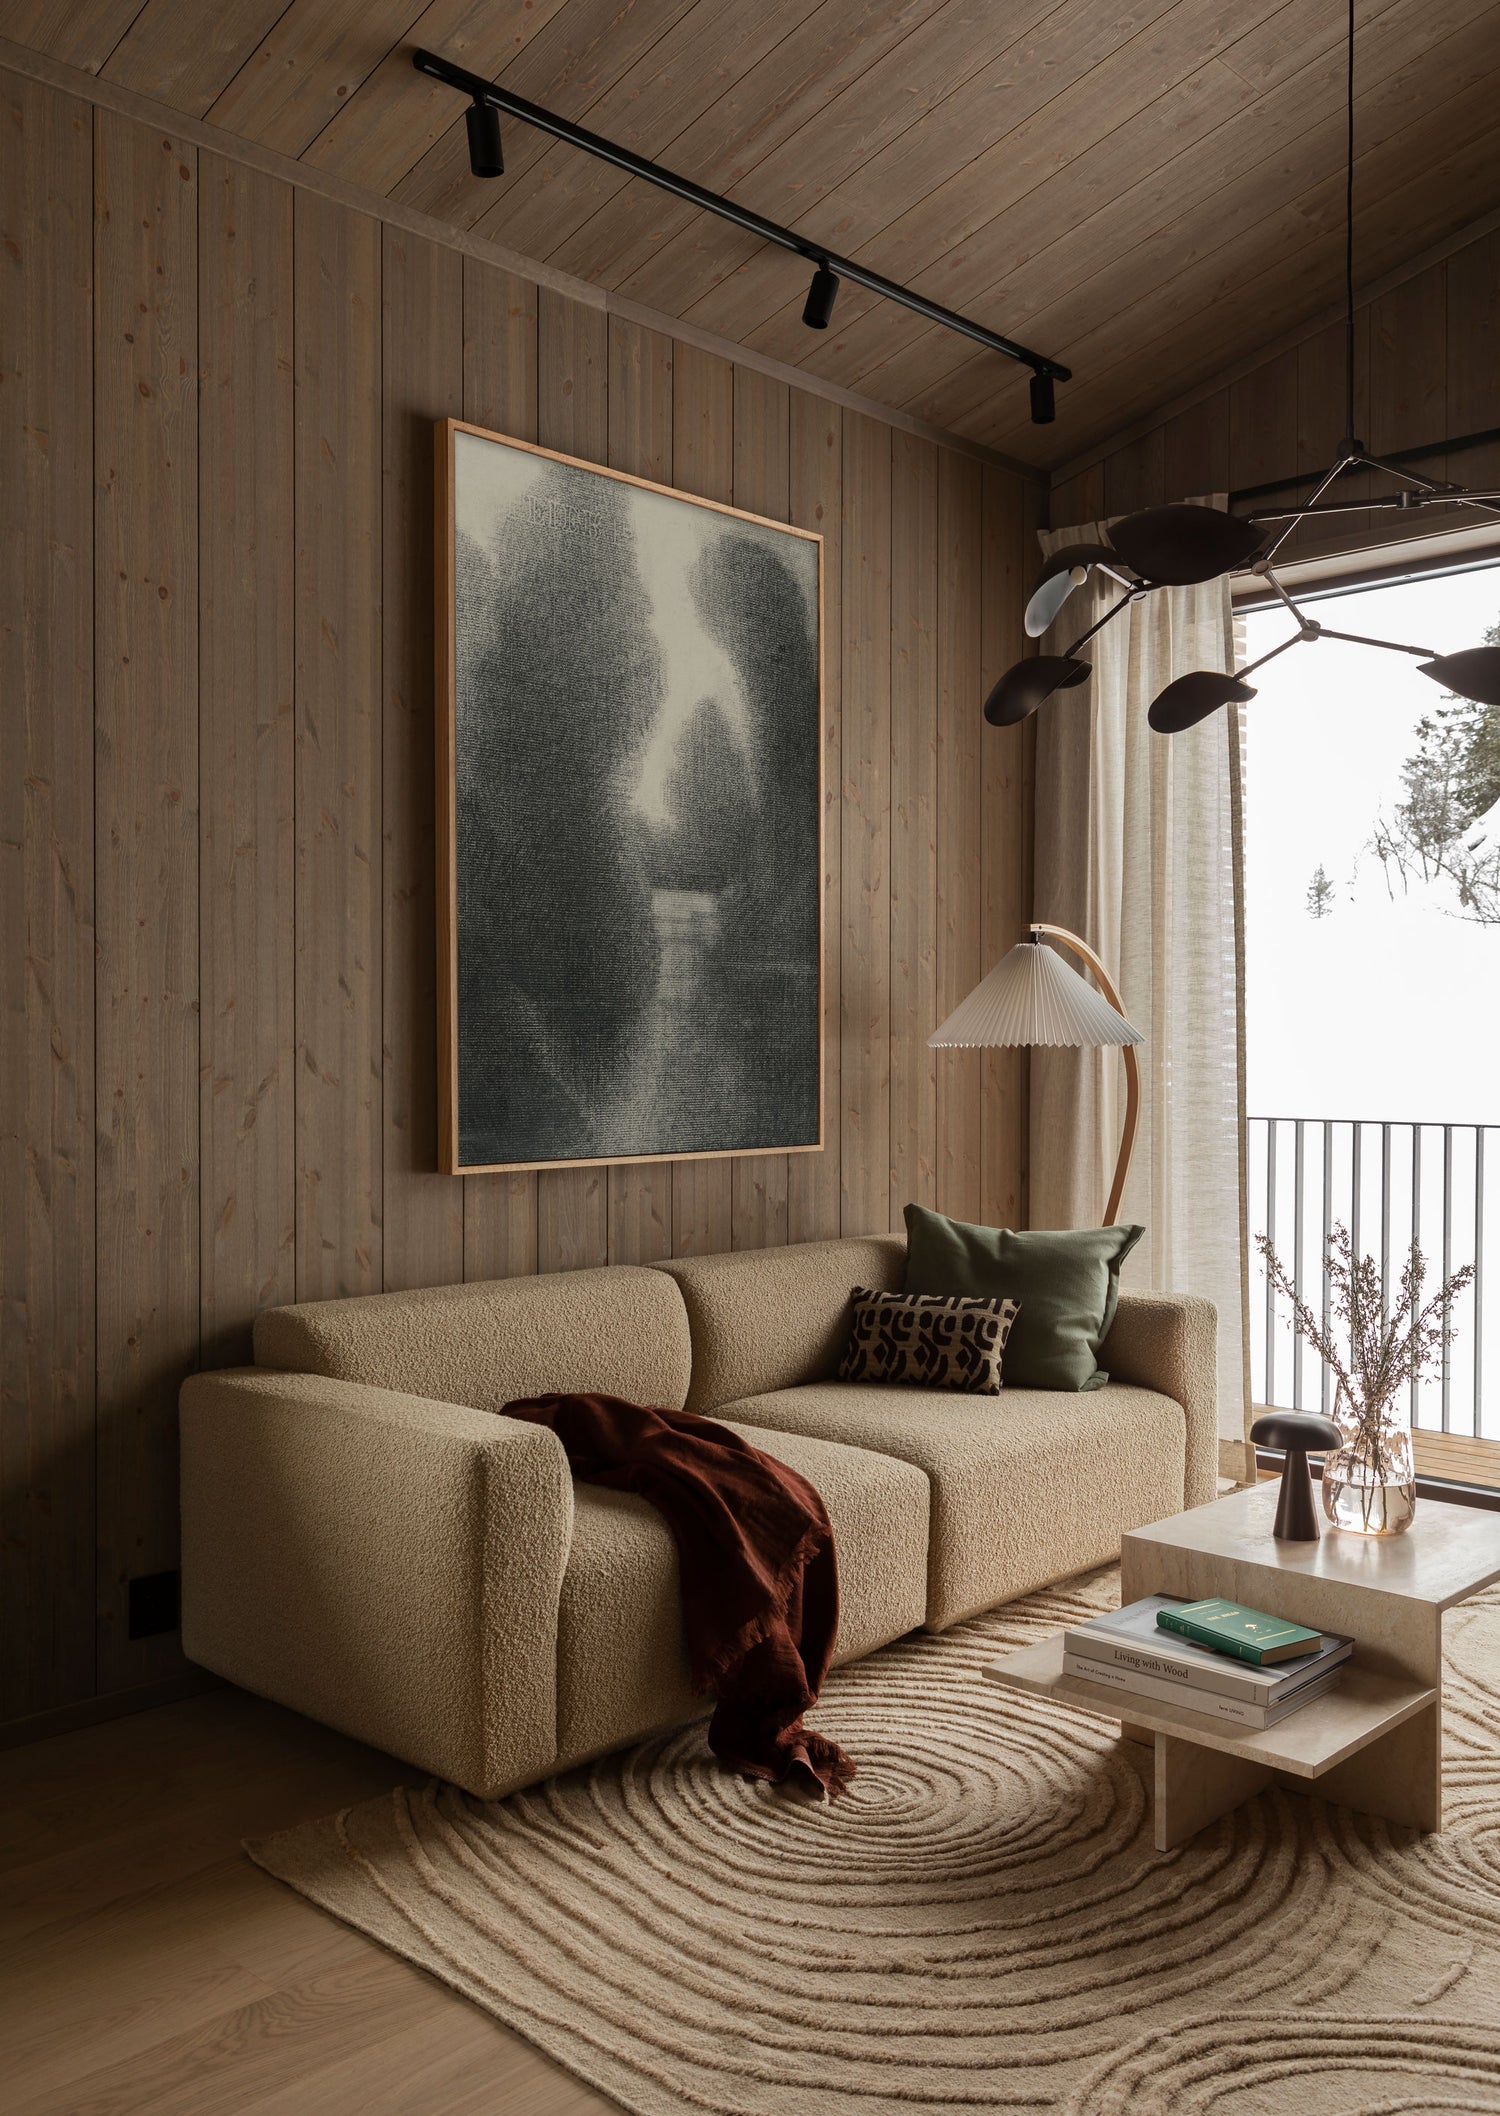 3. Moderne hytte interiør stue: Spill på spennende kontraster i naturmaterialer! Et kunstferdig teppe med en sofa i et uttrykksfullt tekstil står eksempelvis vakkert til tynne lingardiner og sofabord i stein.